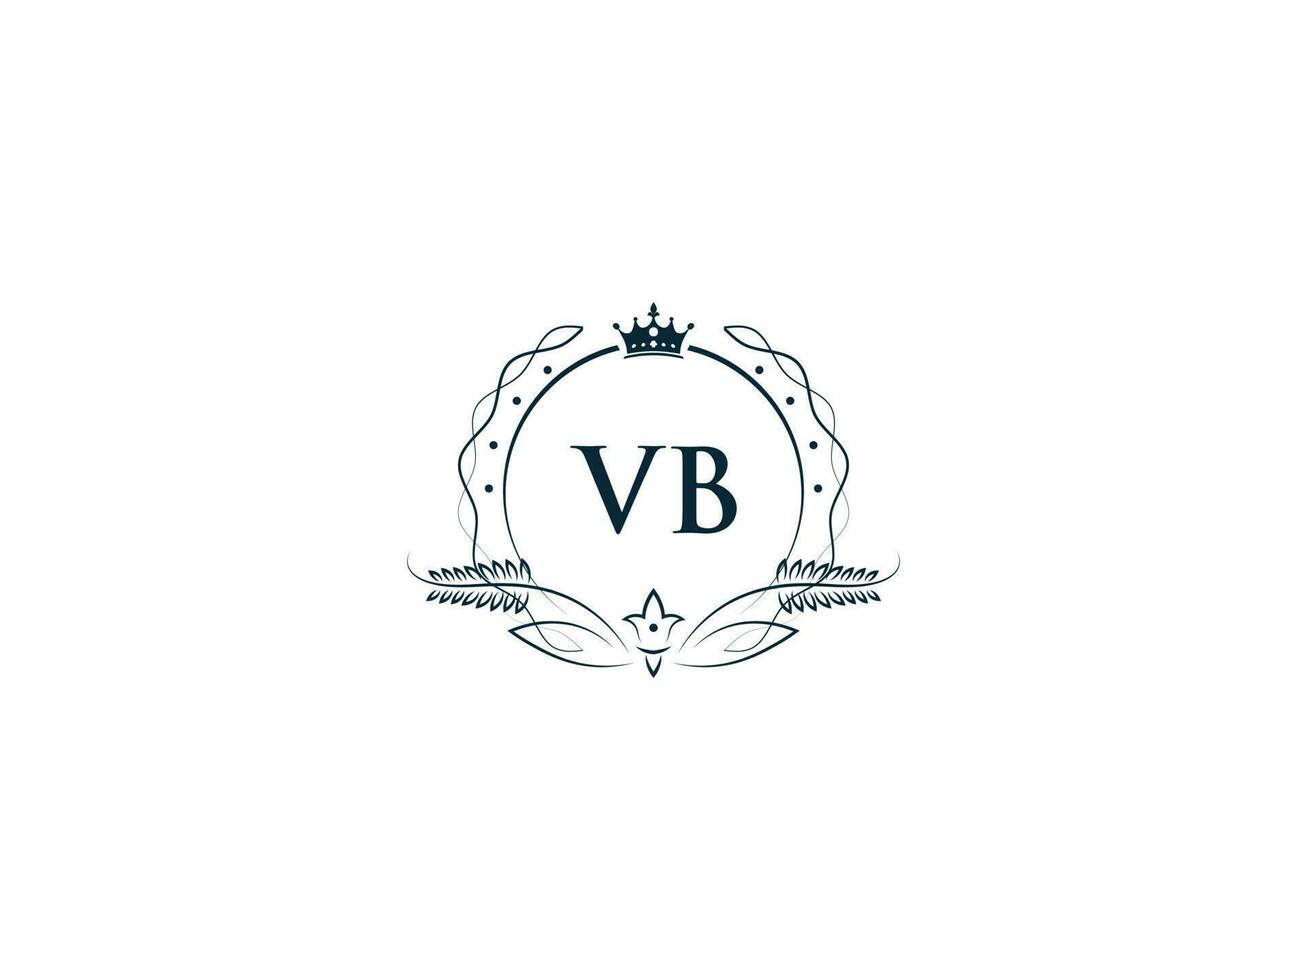 första vb logotyp brev design, minimal kunglig krona vb bv feminin logotyp symbol vektor